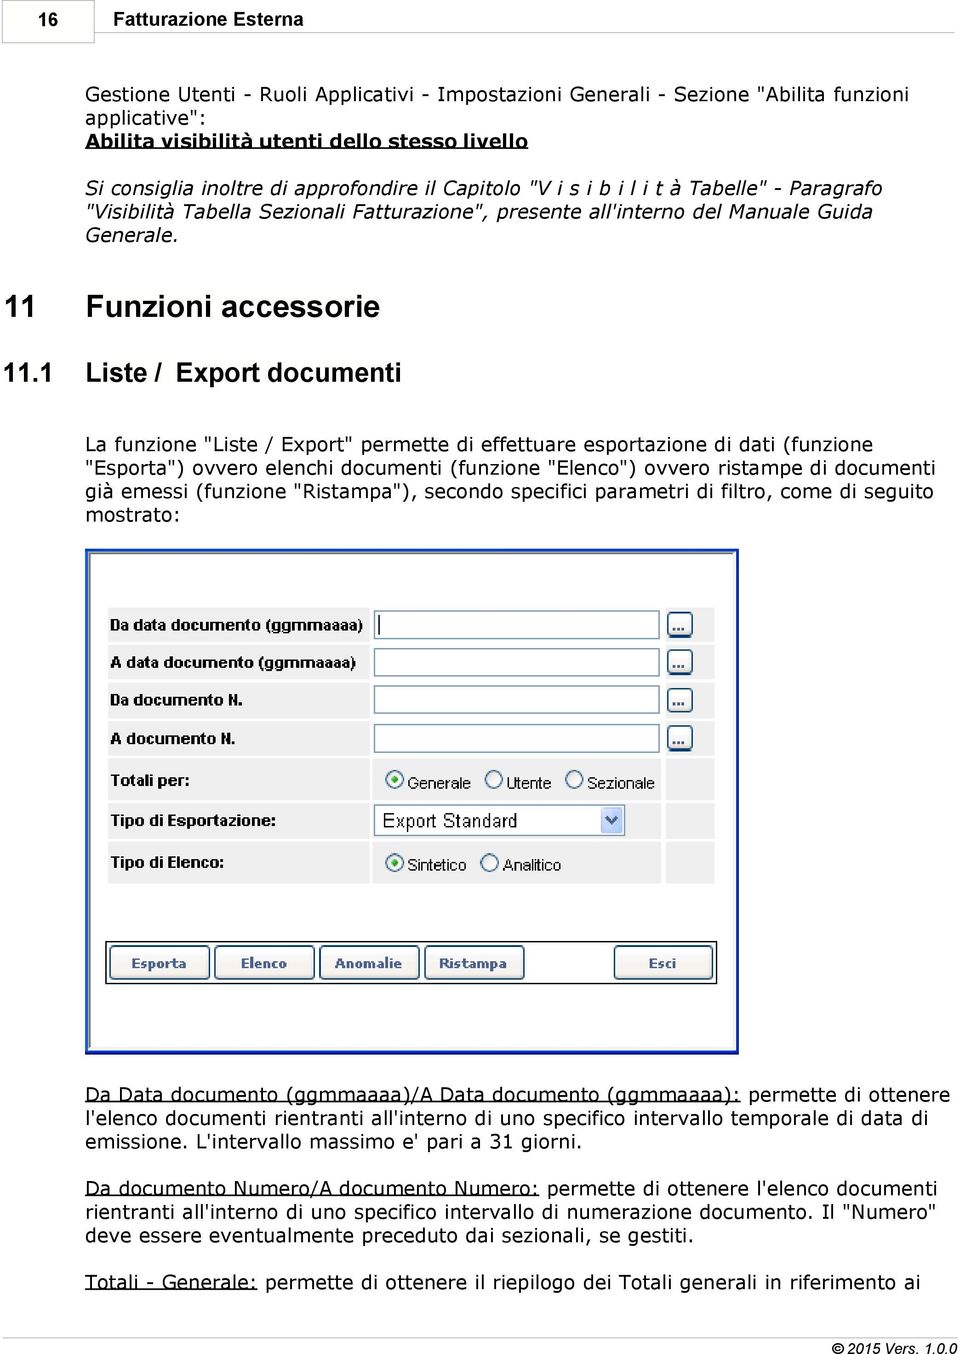 1 Liste / Export documenti La funzione "Liste / Export" permette di effettuare esportazione di dati (funzione "Esporta") ovvero elenchi documenti (funzione "Elenco") ovvero ristampe di documenti già